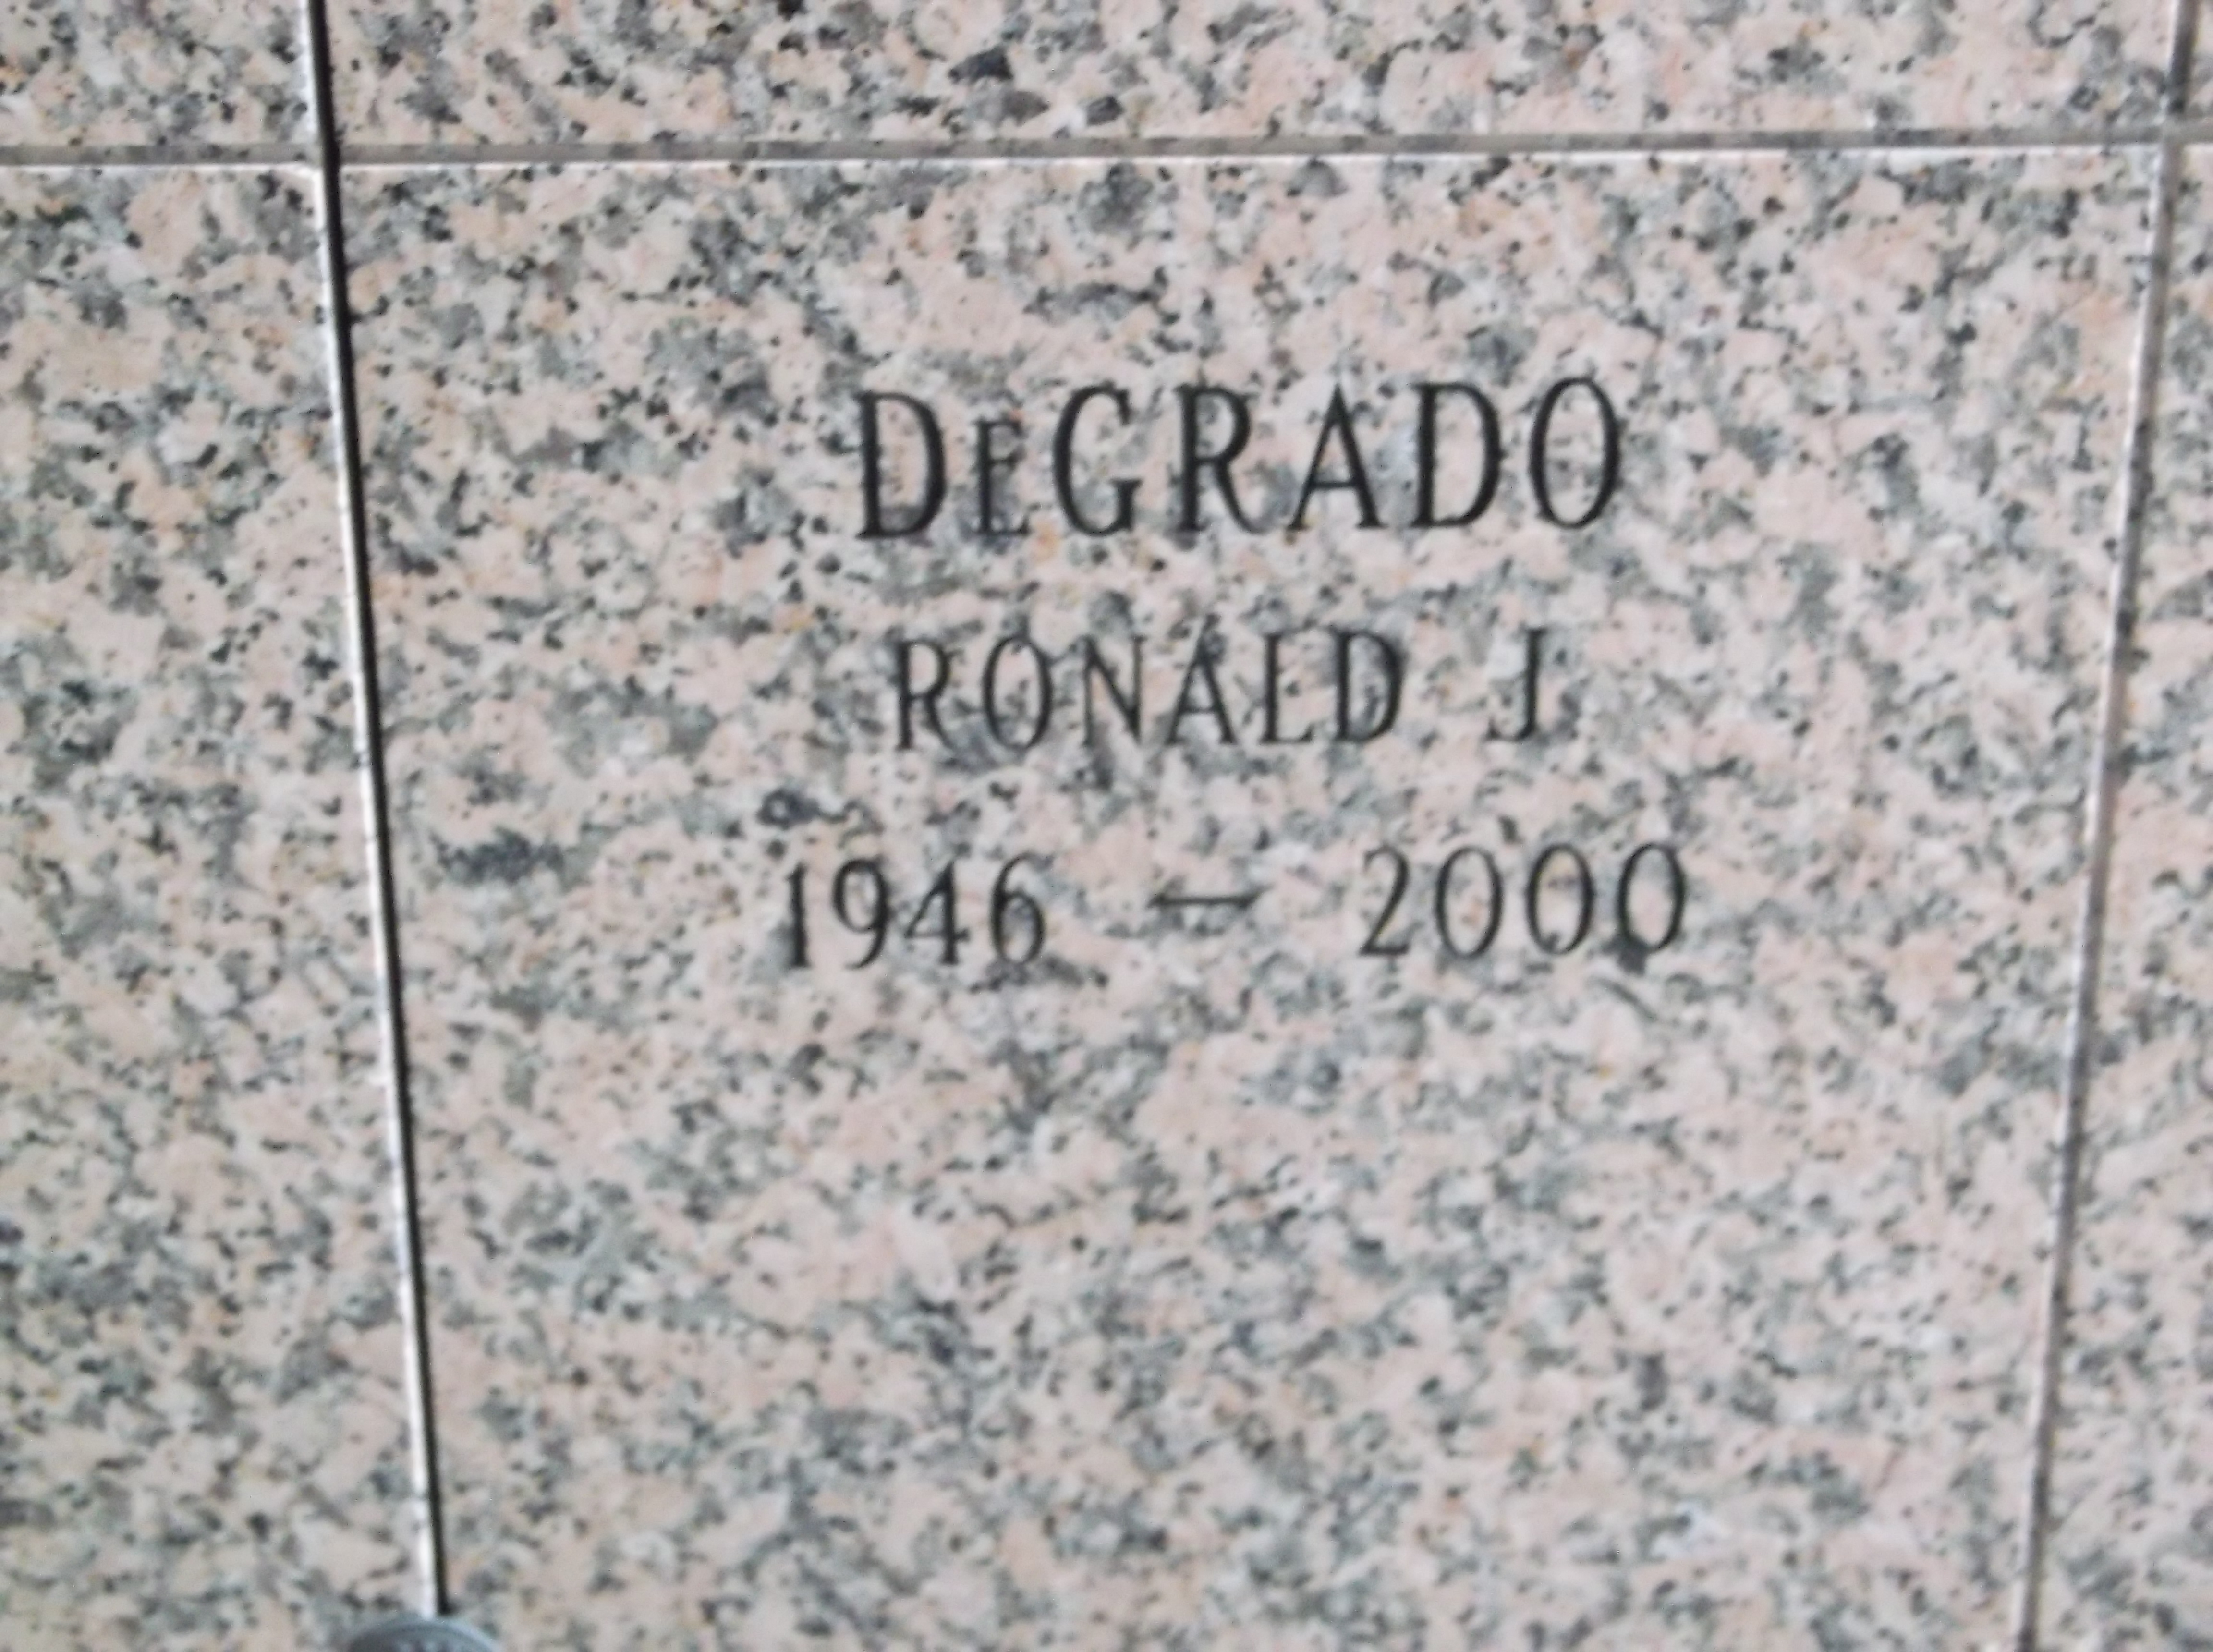 Ronald J DeGrado